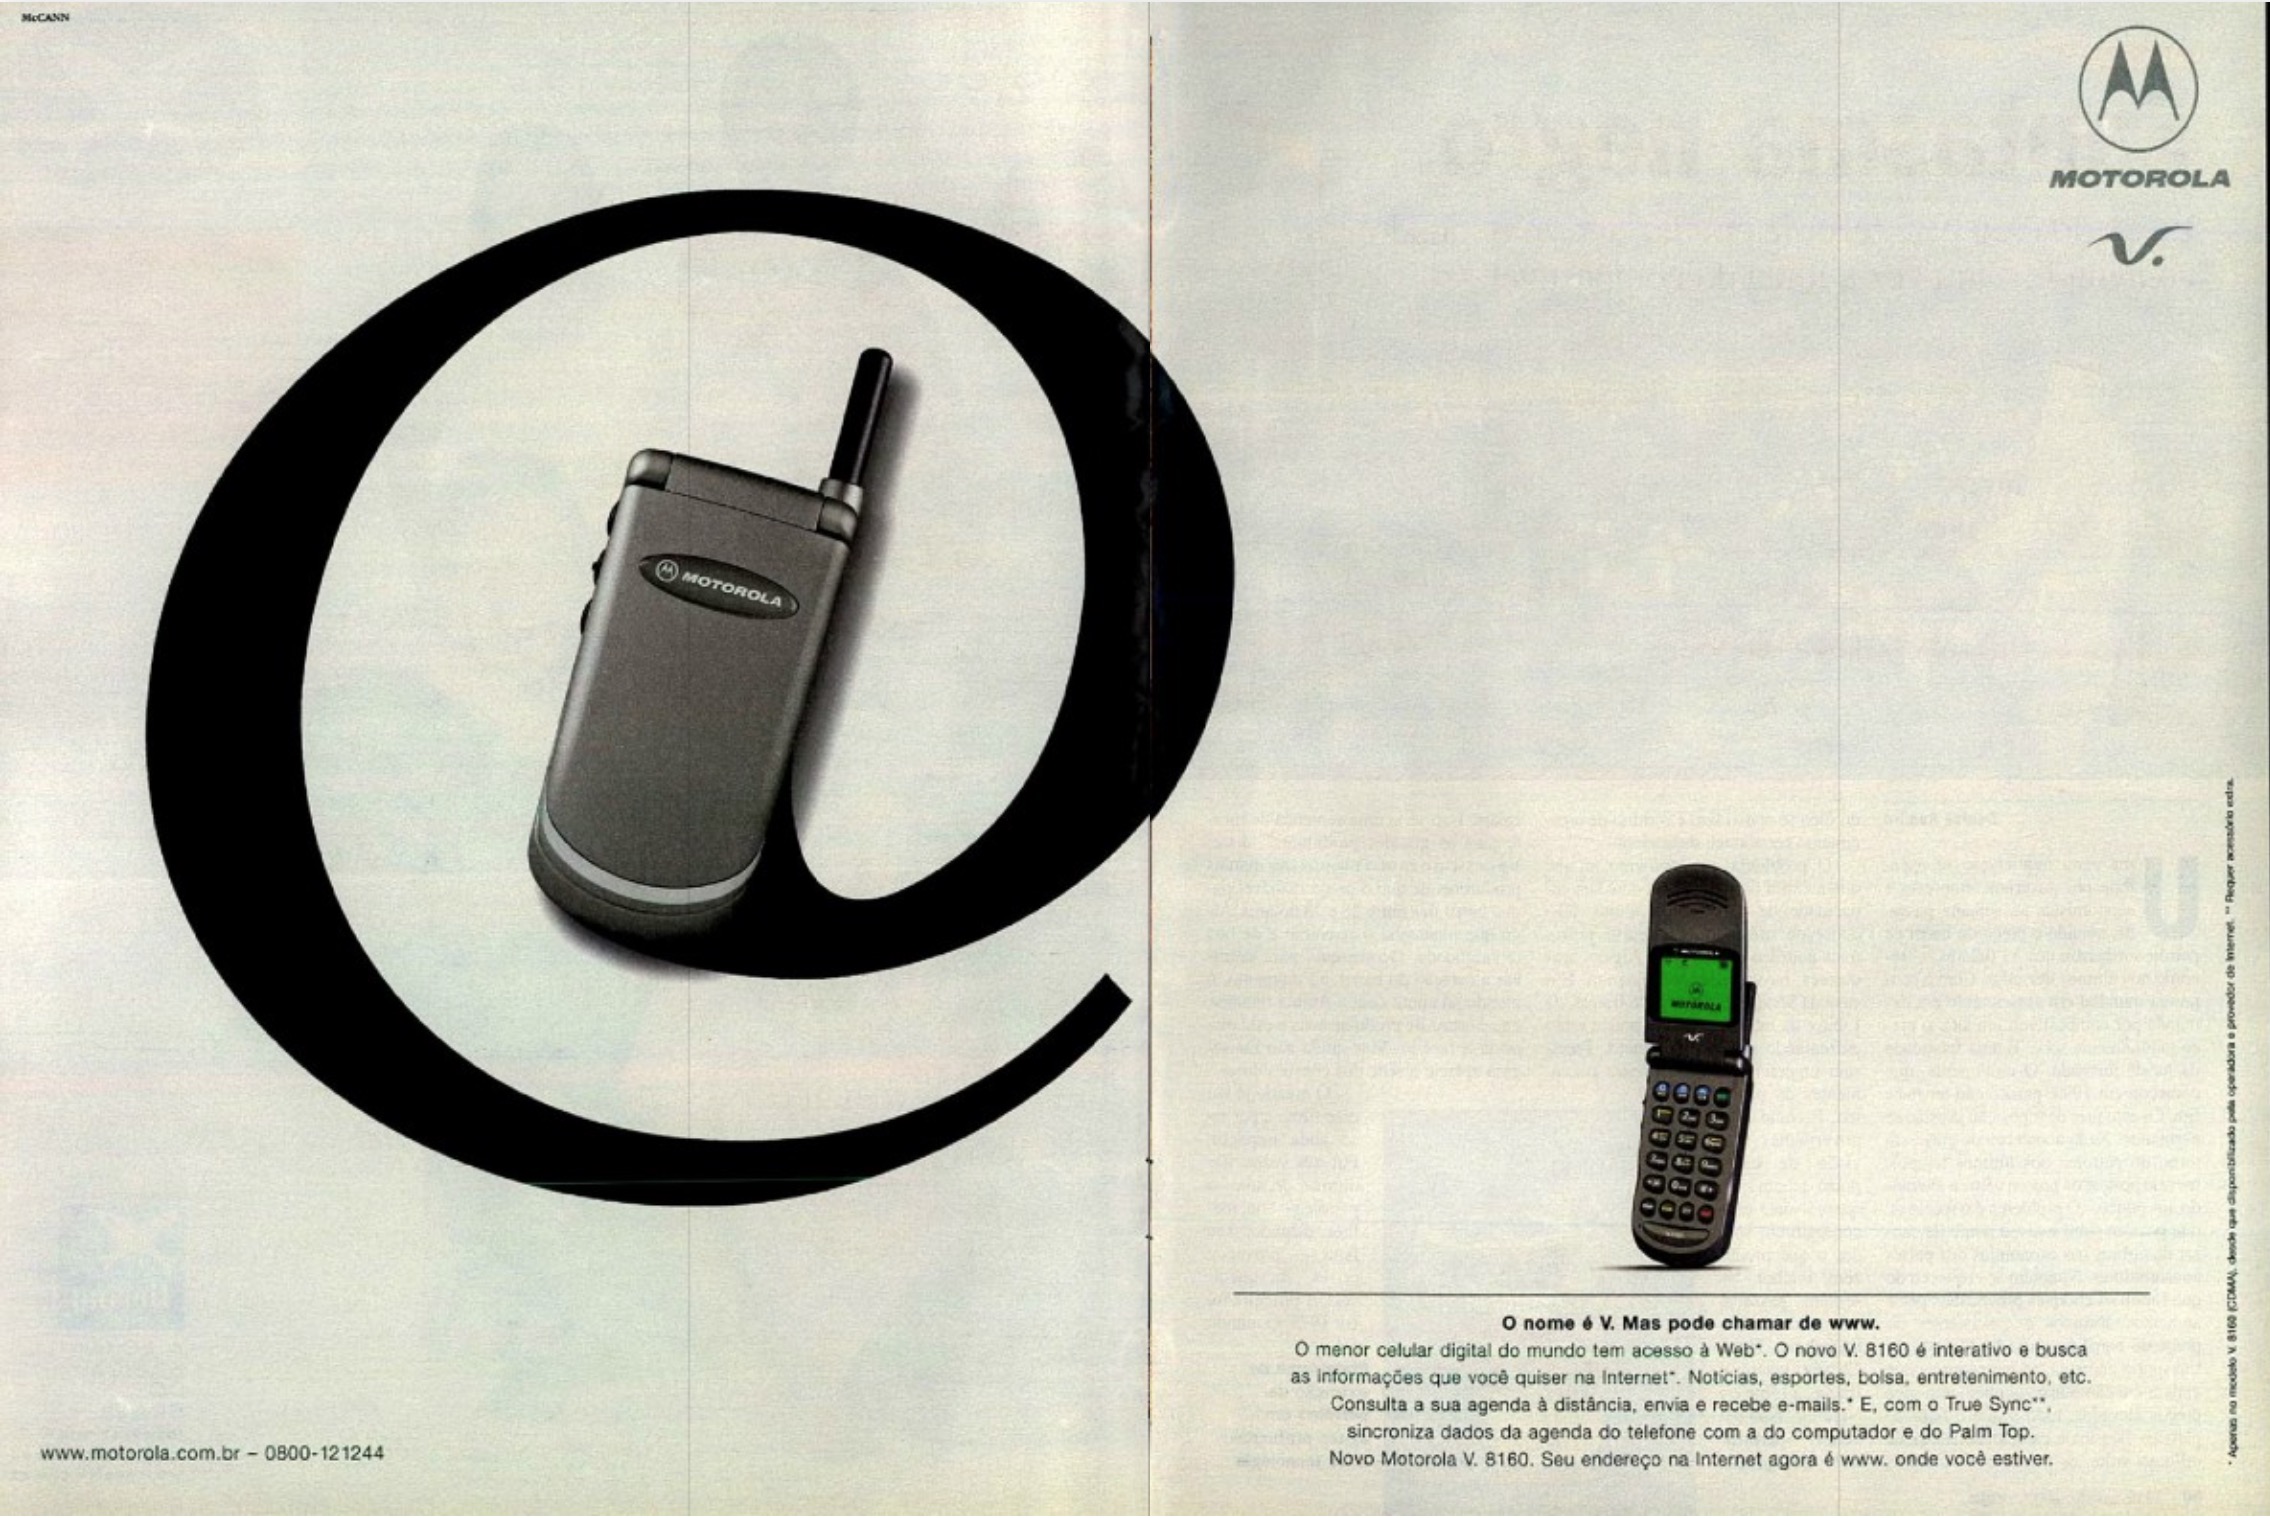 Anúncio veiculado no ano 2000 promovendo o modelo de celular V da Motorola